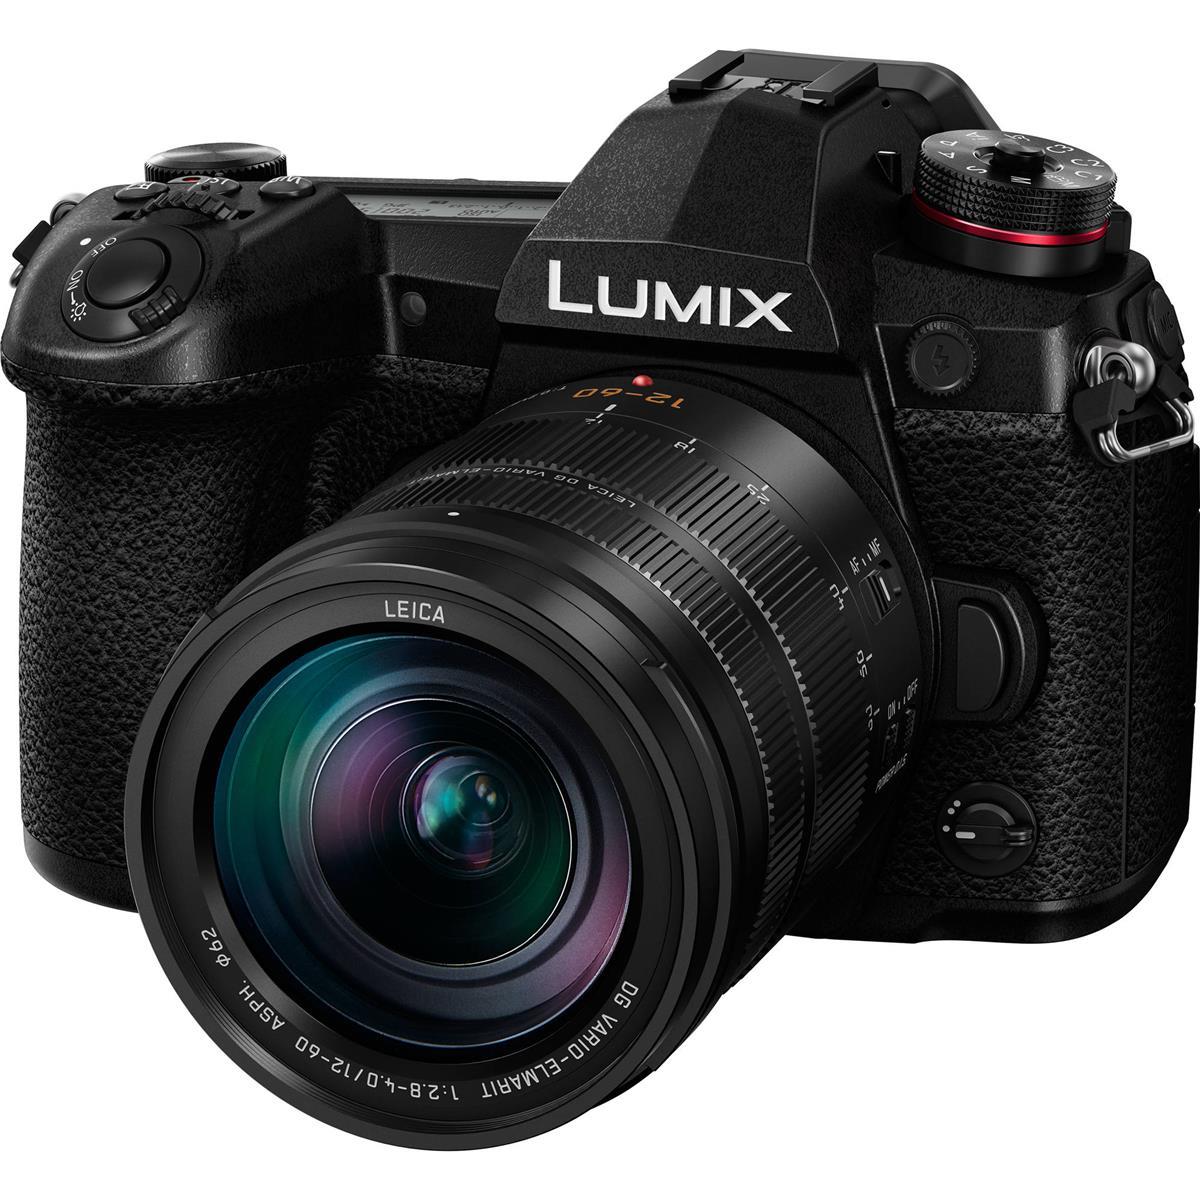 Image of Panasonic Lumix G9 Mirrorless Camera